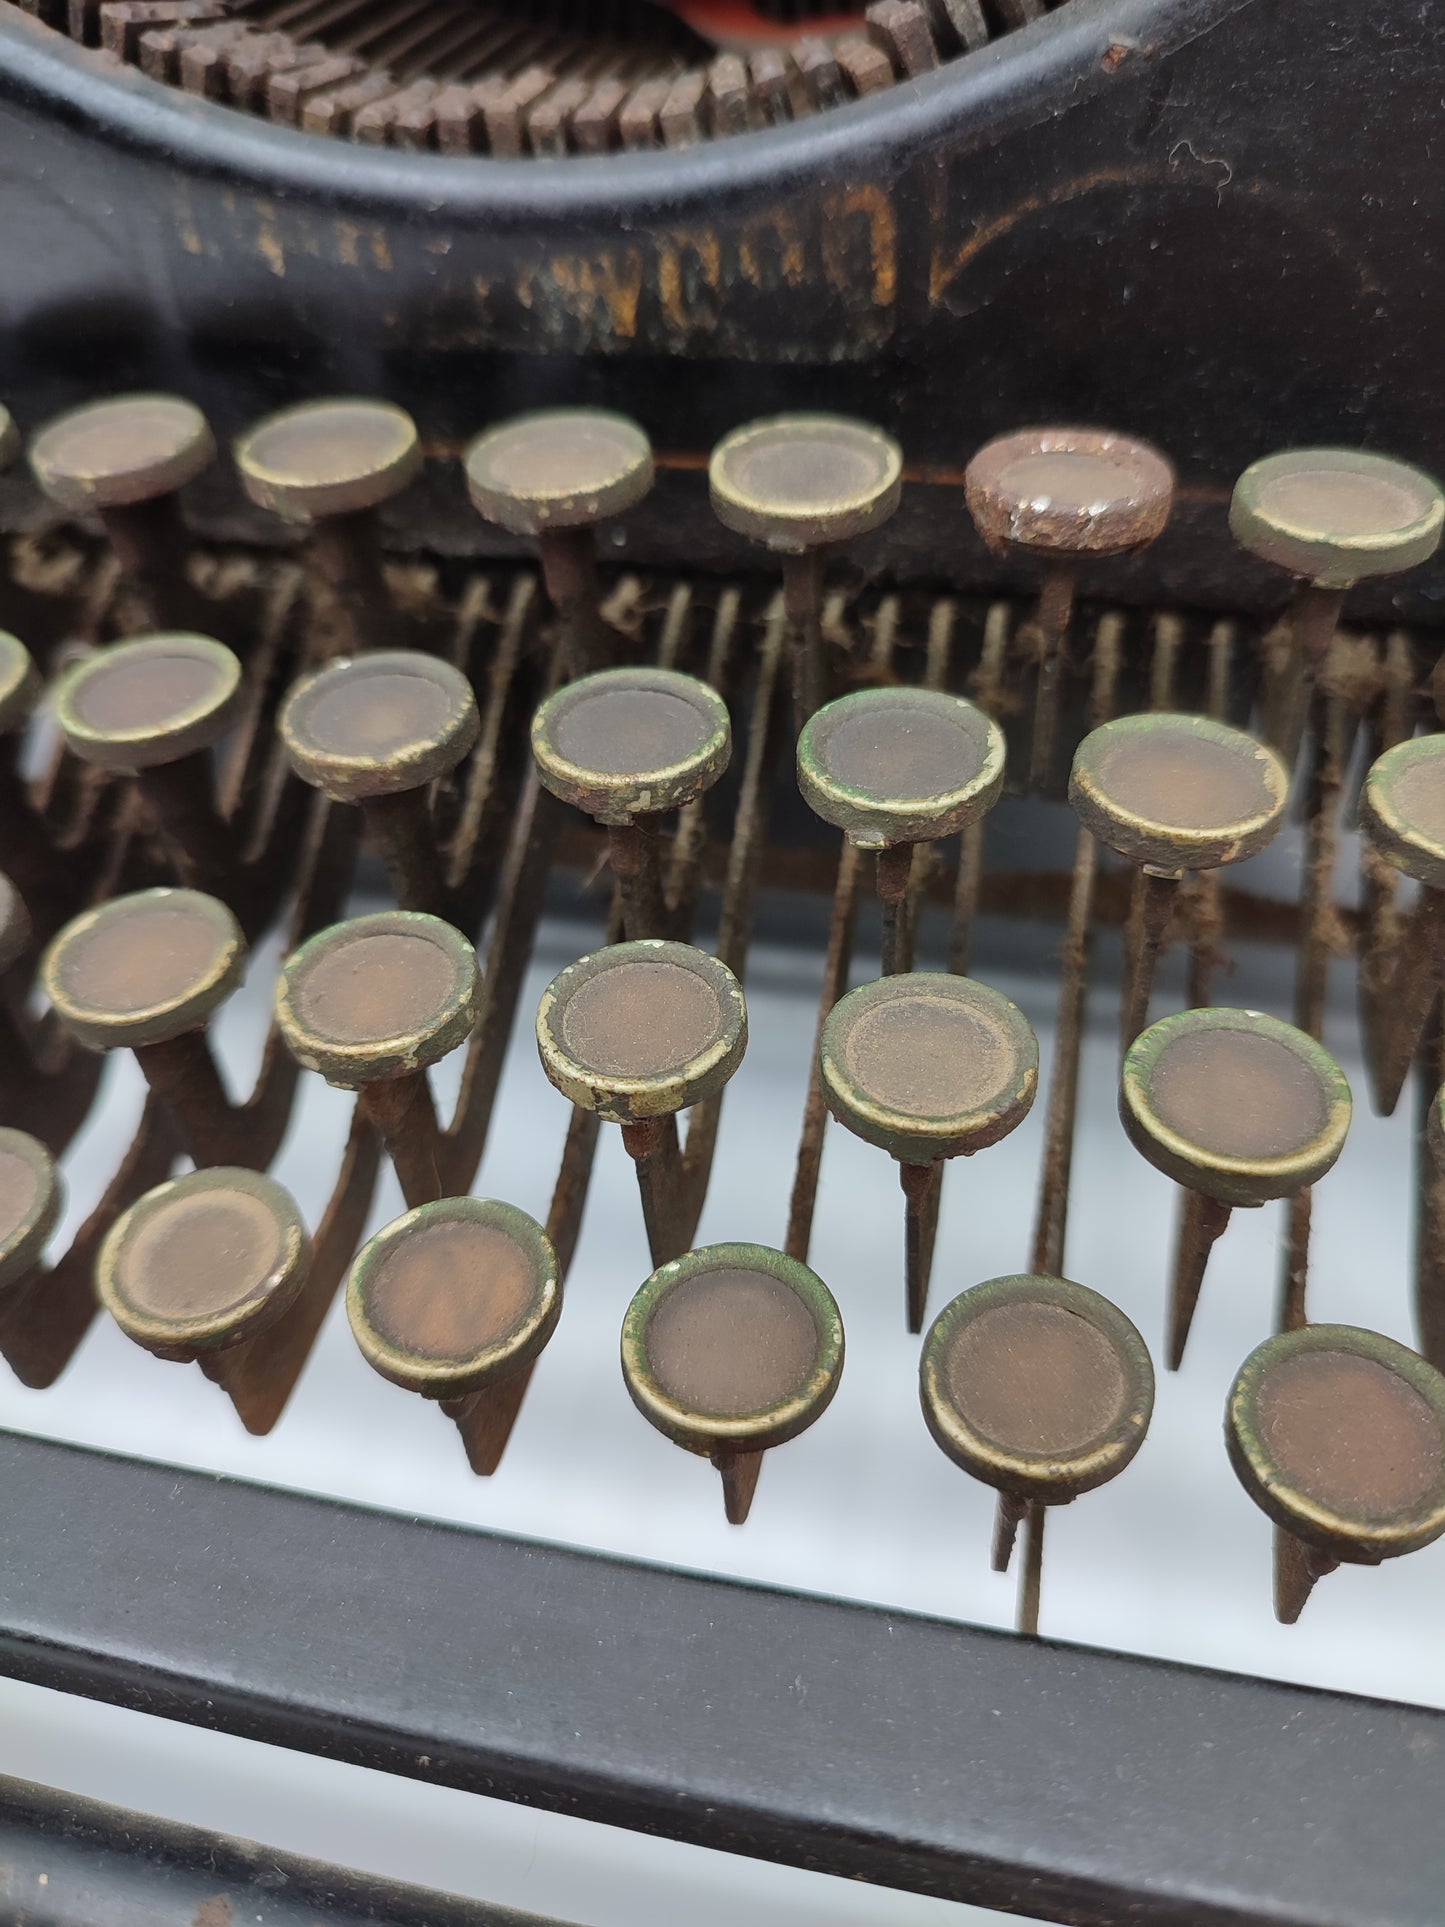 56966 Antica macchina da scrivere Underwood